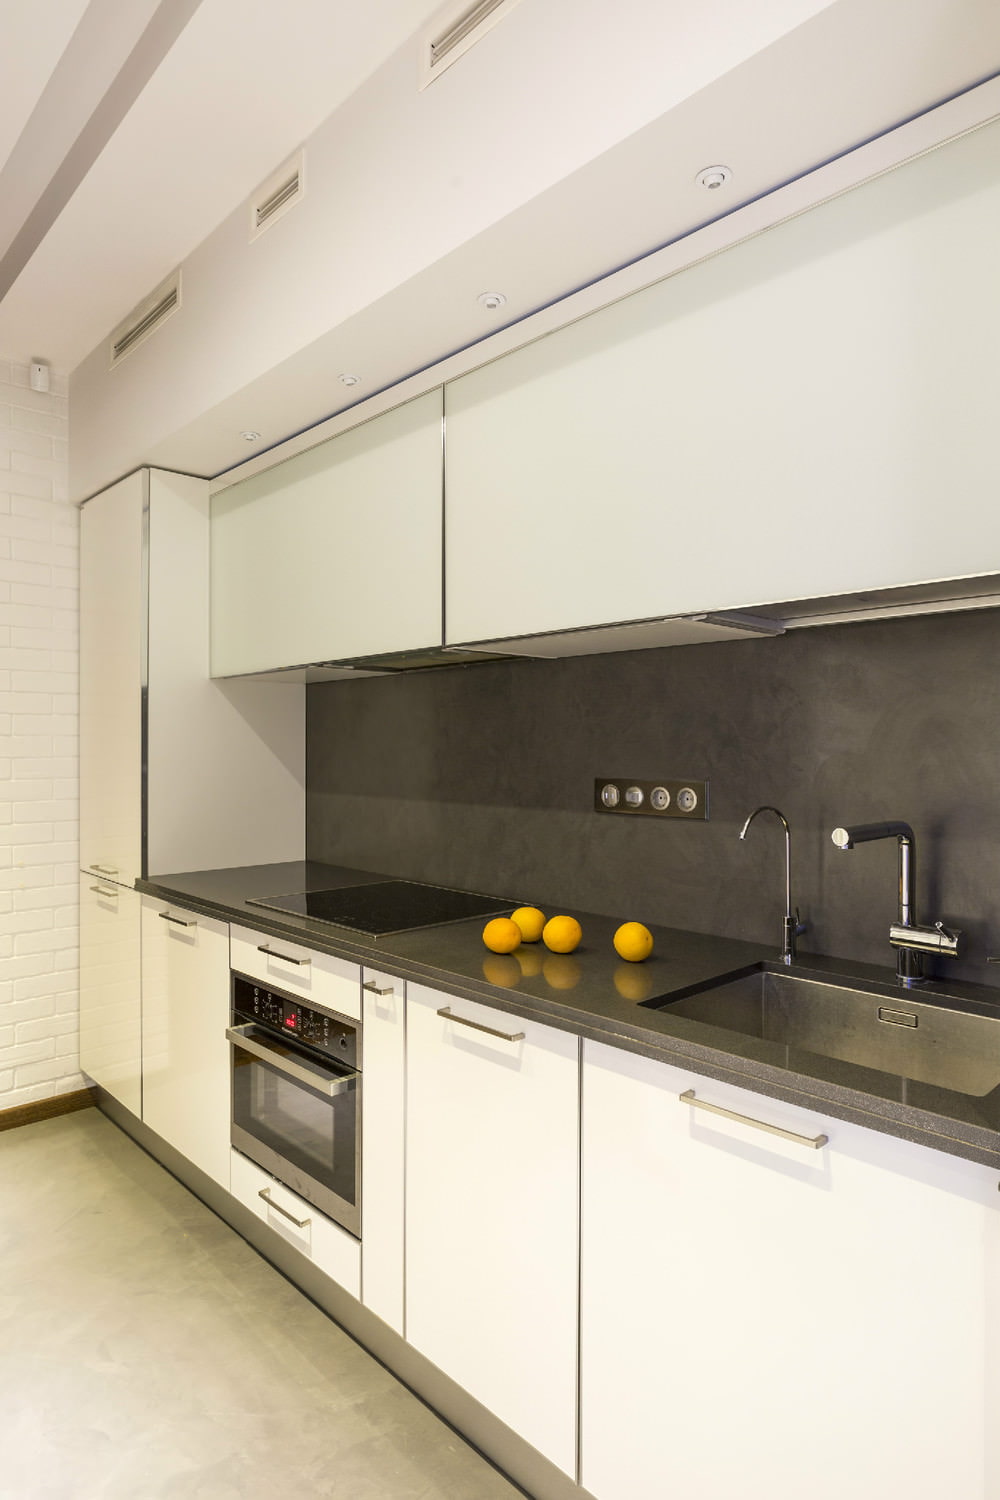 المطبخ في تصميم شقة من غرفتين بمساحة 43 متر مربع. م.